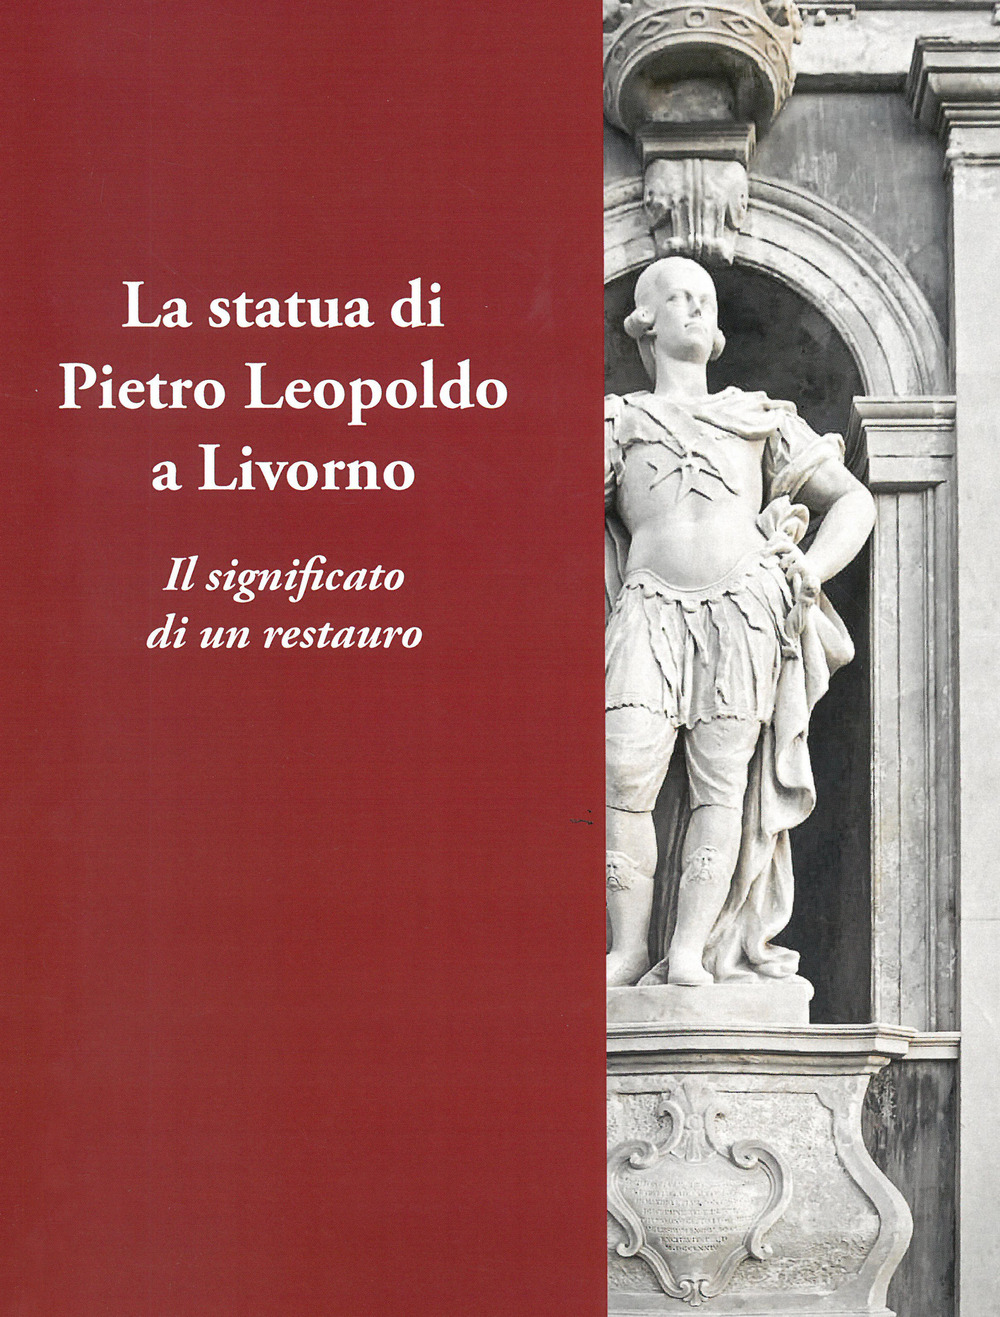 La statua di Pietro Leopoldo a Livorno. Il vero significato di un restauro